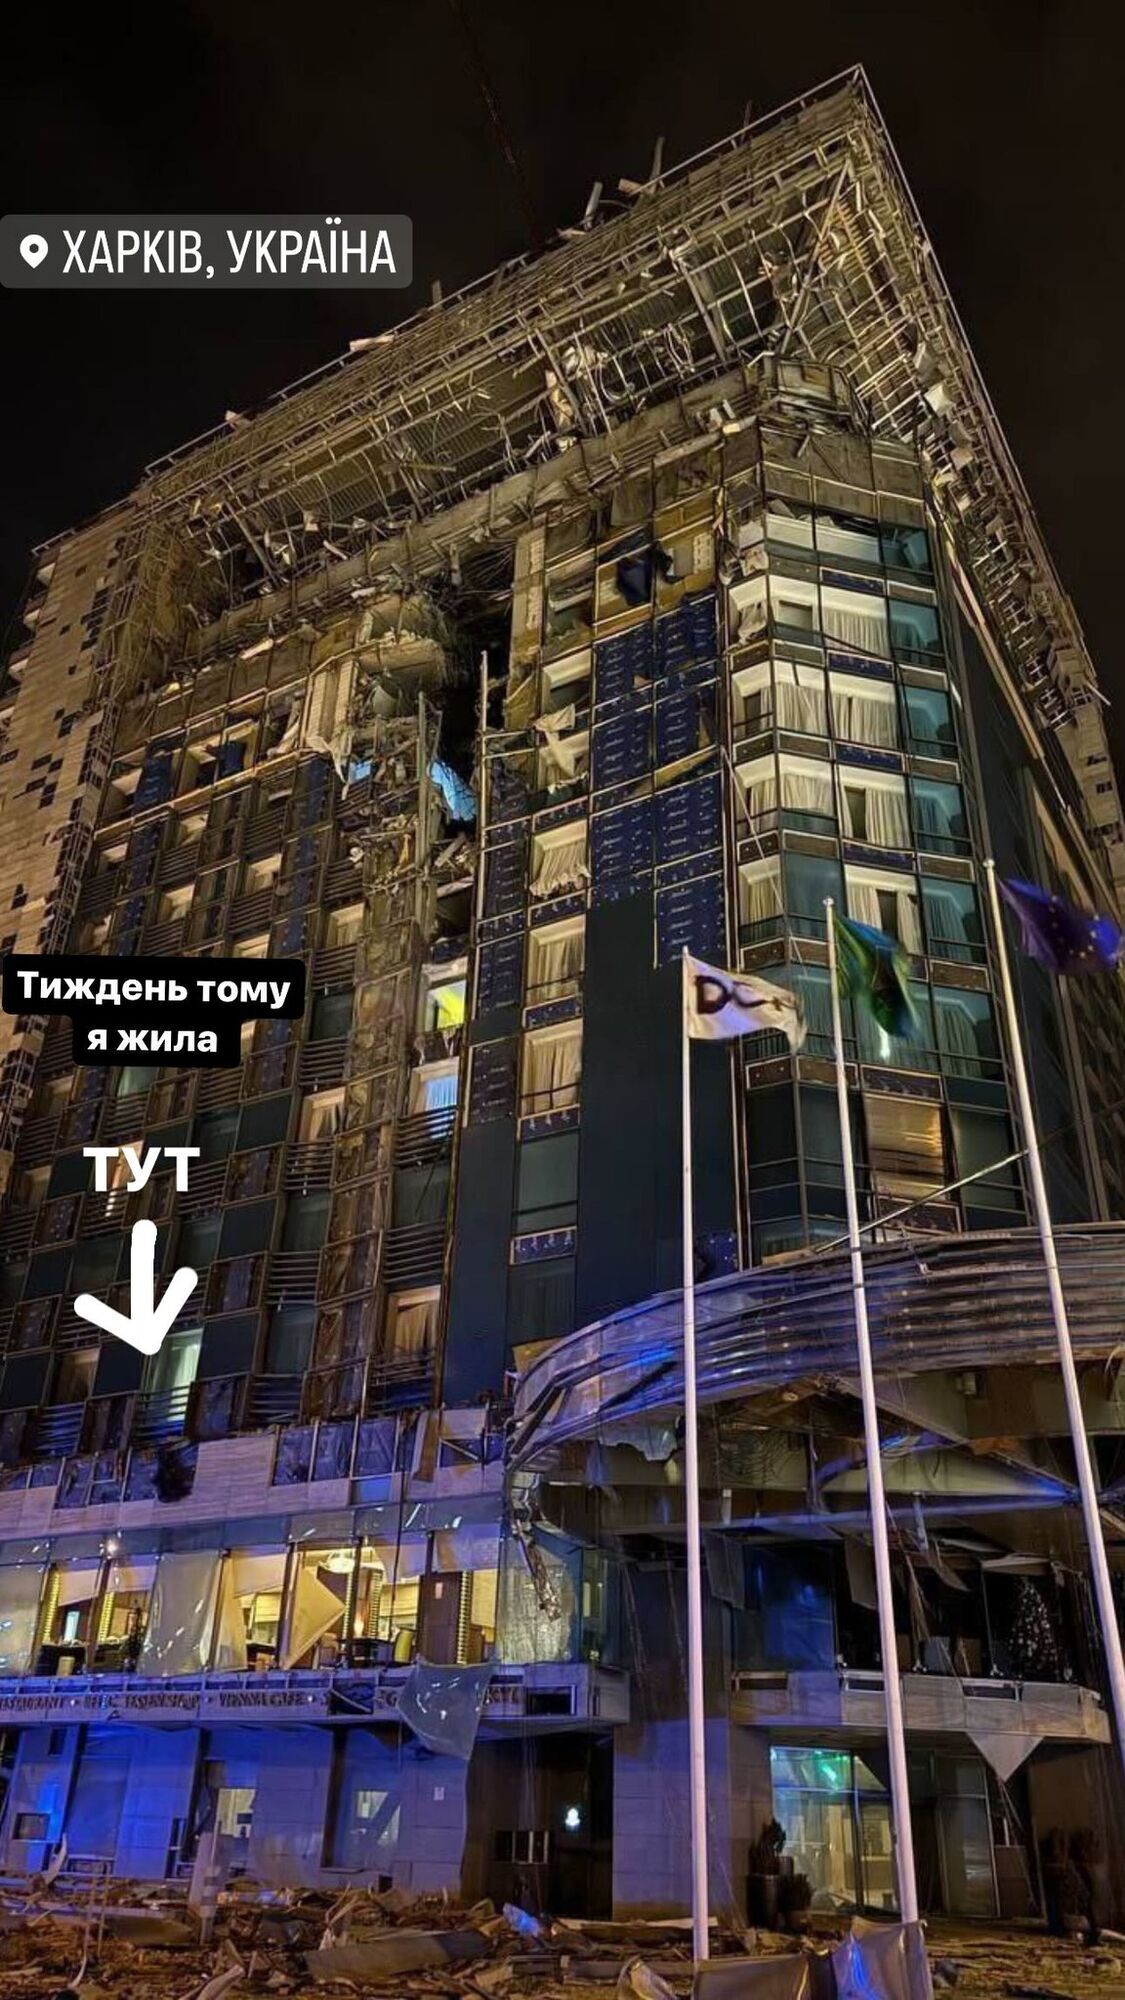 "Неделю назад я жила здесь": Ефросинина показала разрушенную россиянами гостиницу в Харькове. Фото